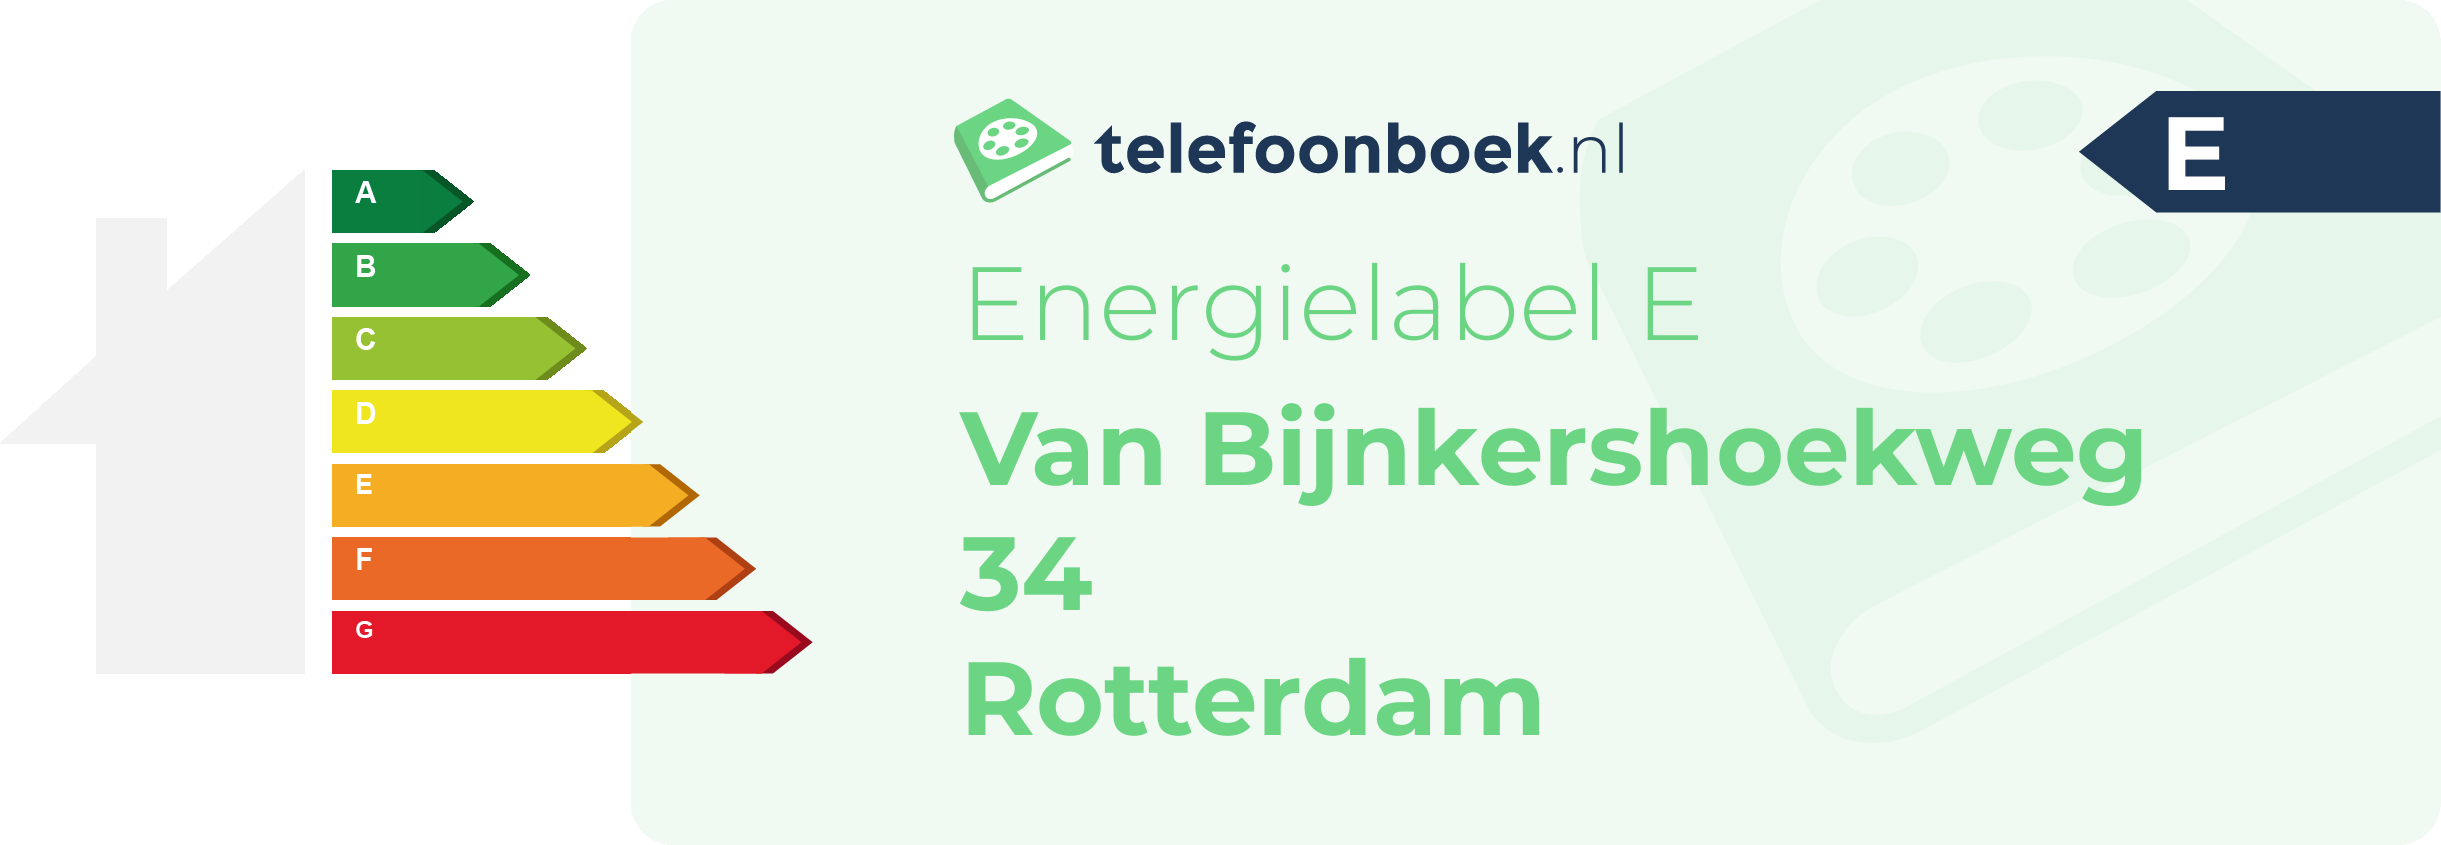 Energielabel Van Bijnkershoekweg 34 Rotterdam